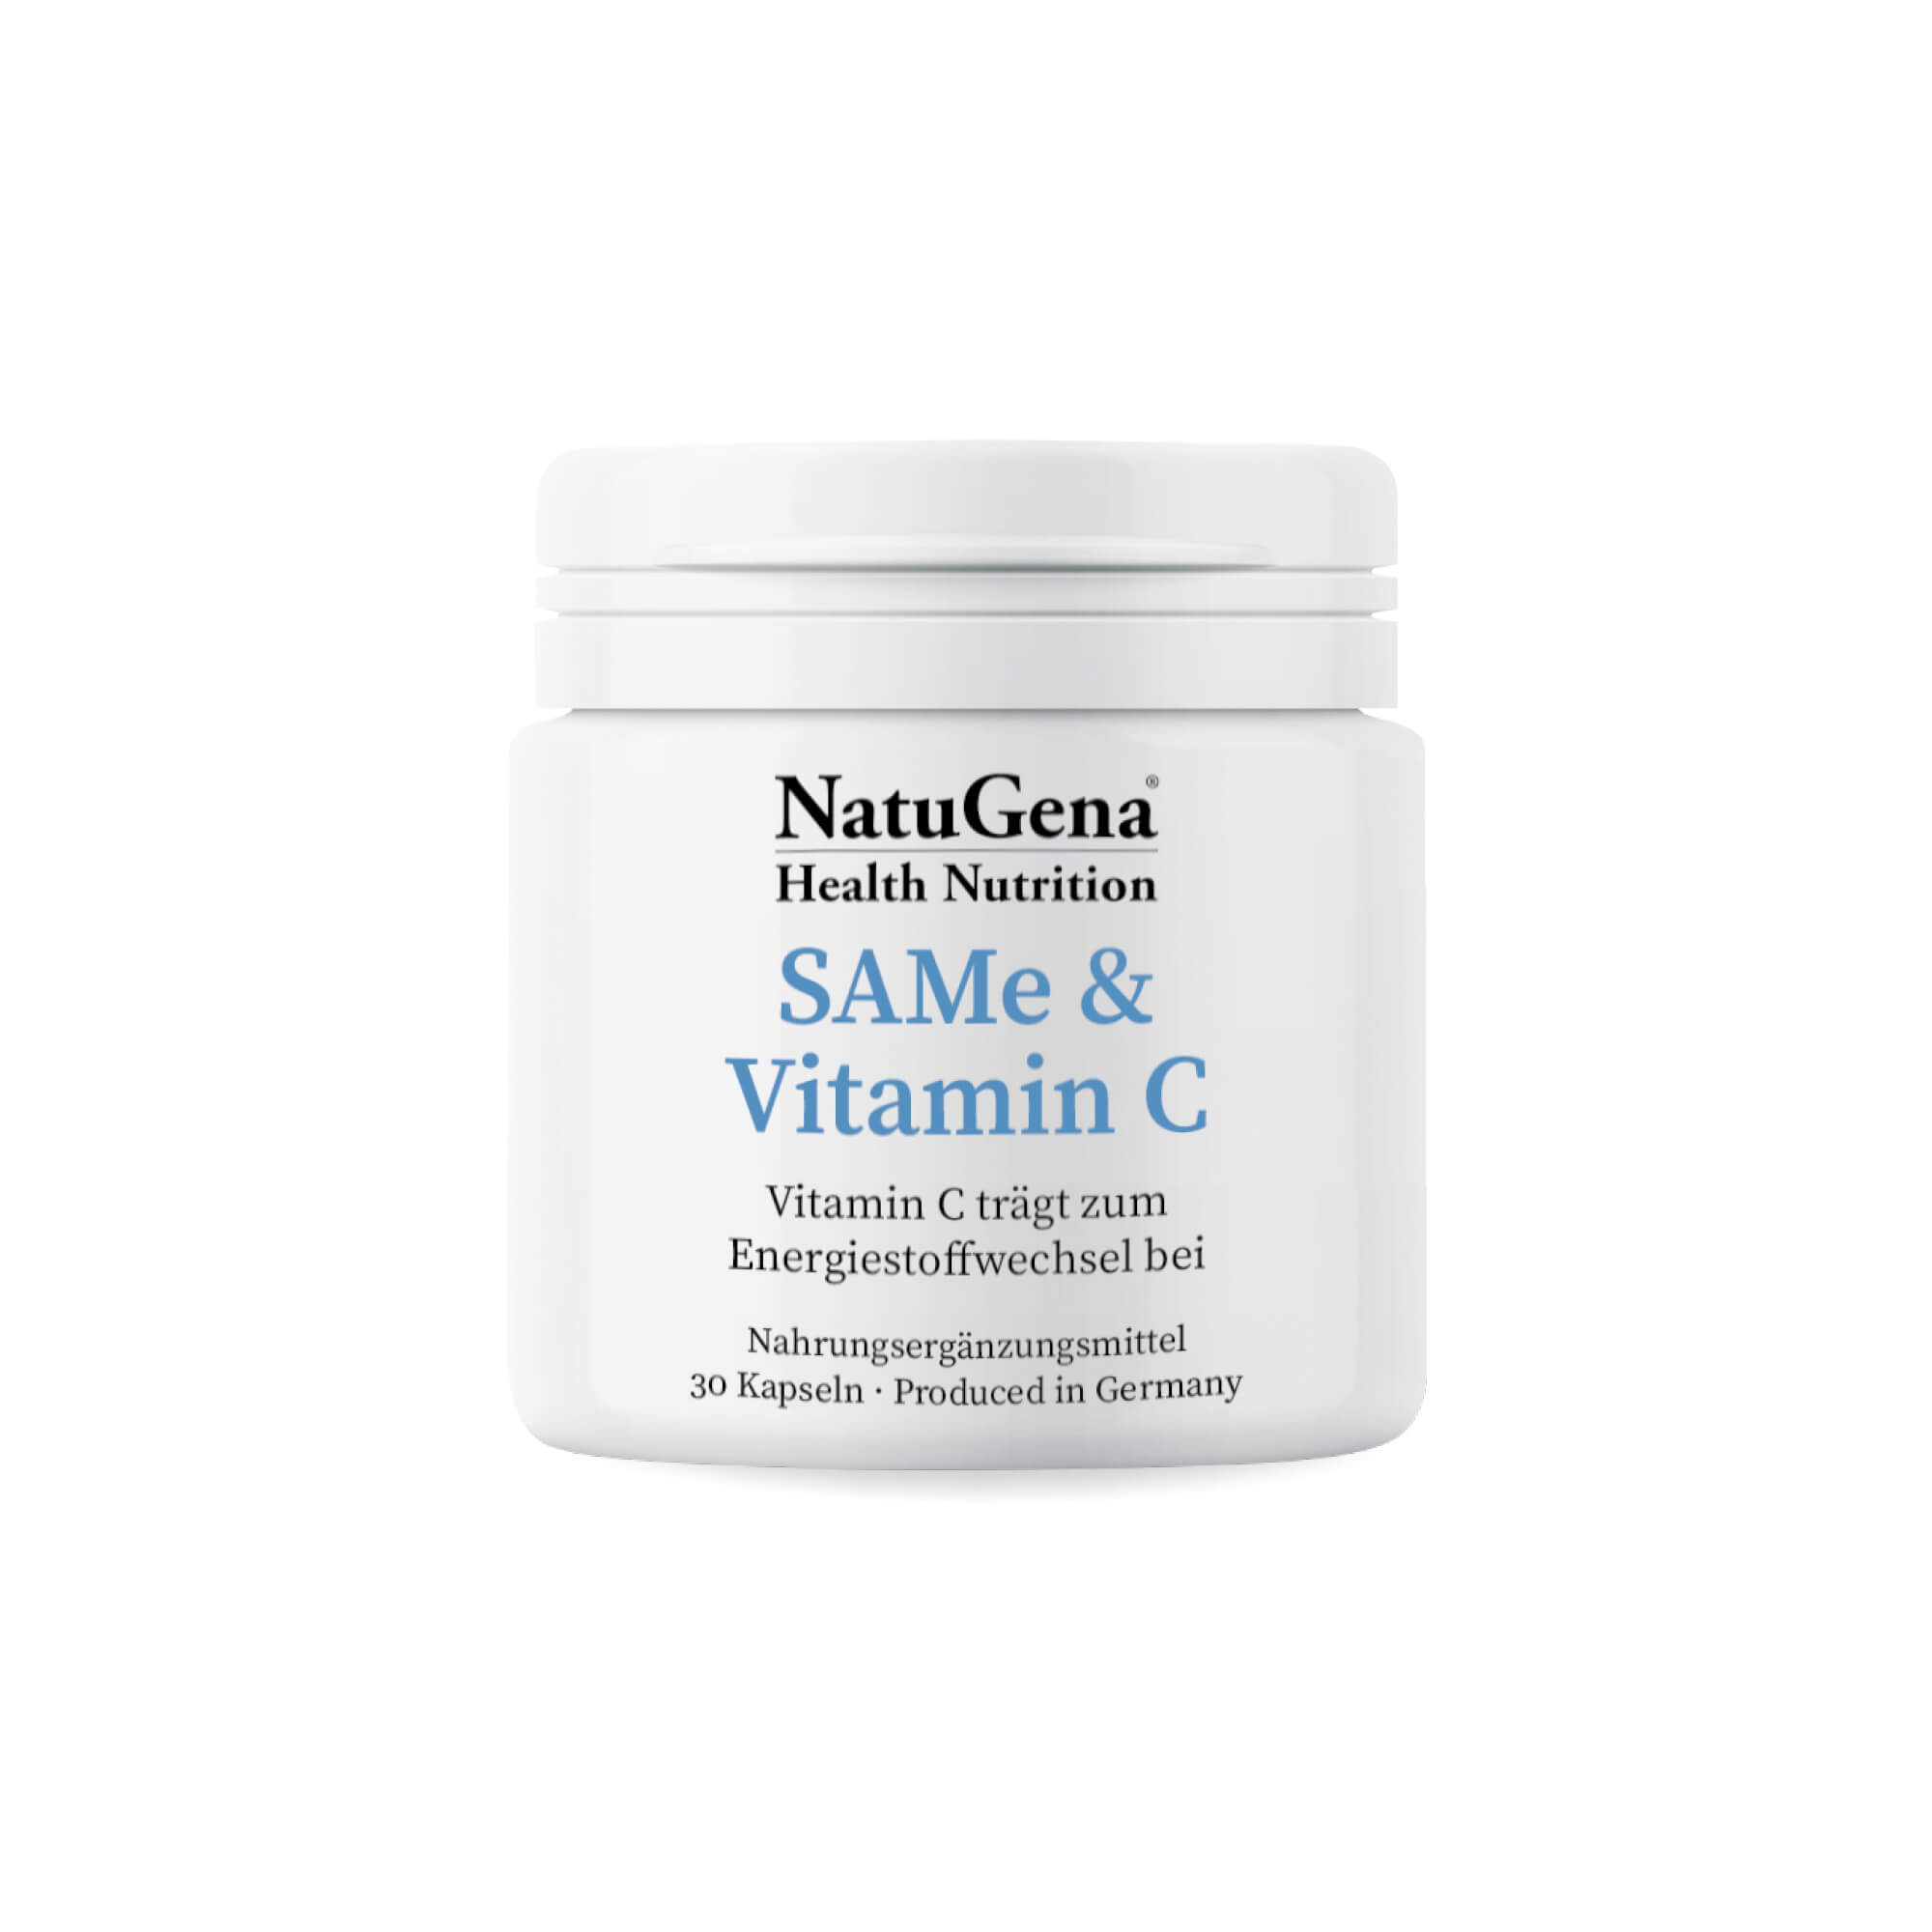 NatuGena SAMe & Vitamin C | 30 Kapseln - Unterstützung für Stoffwechsel und Nervensystem